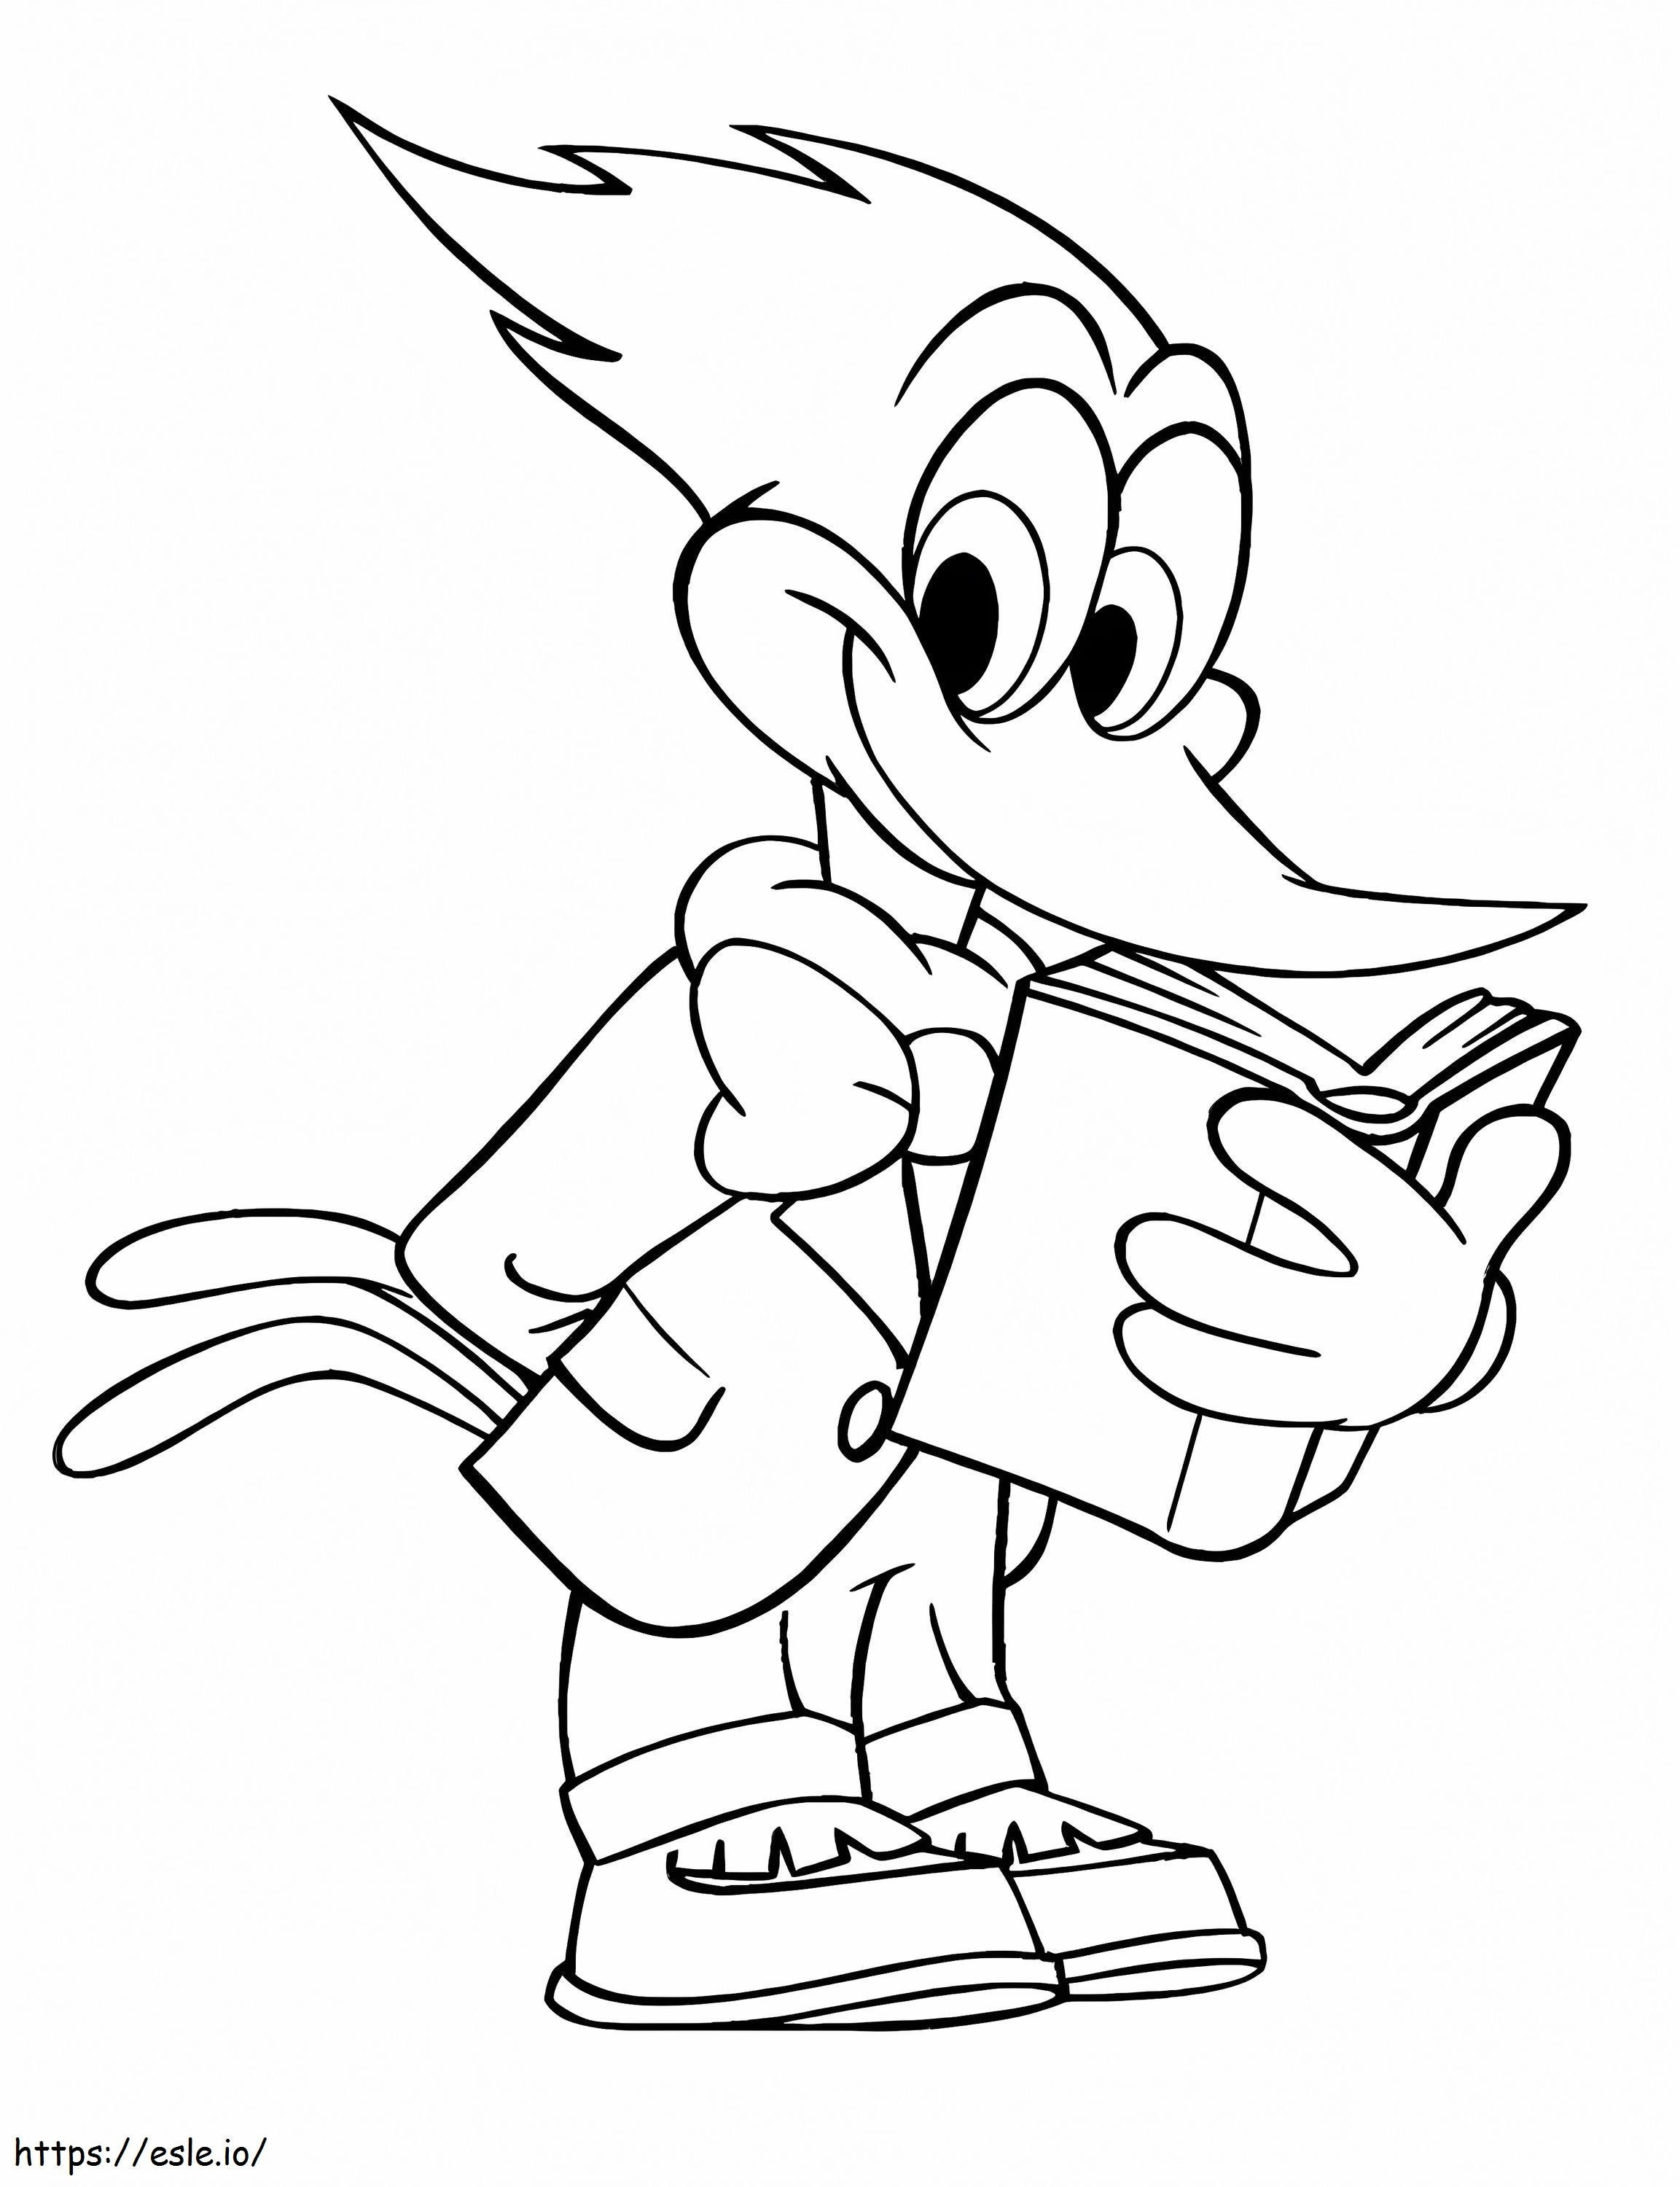 Cartea de lectură Woody Woodpecker de colorat